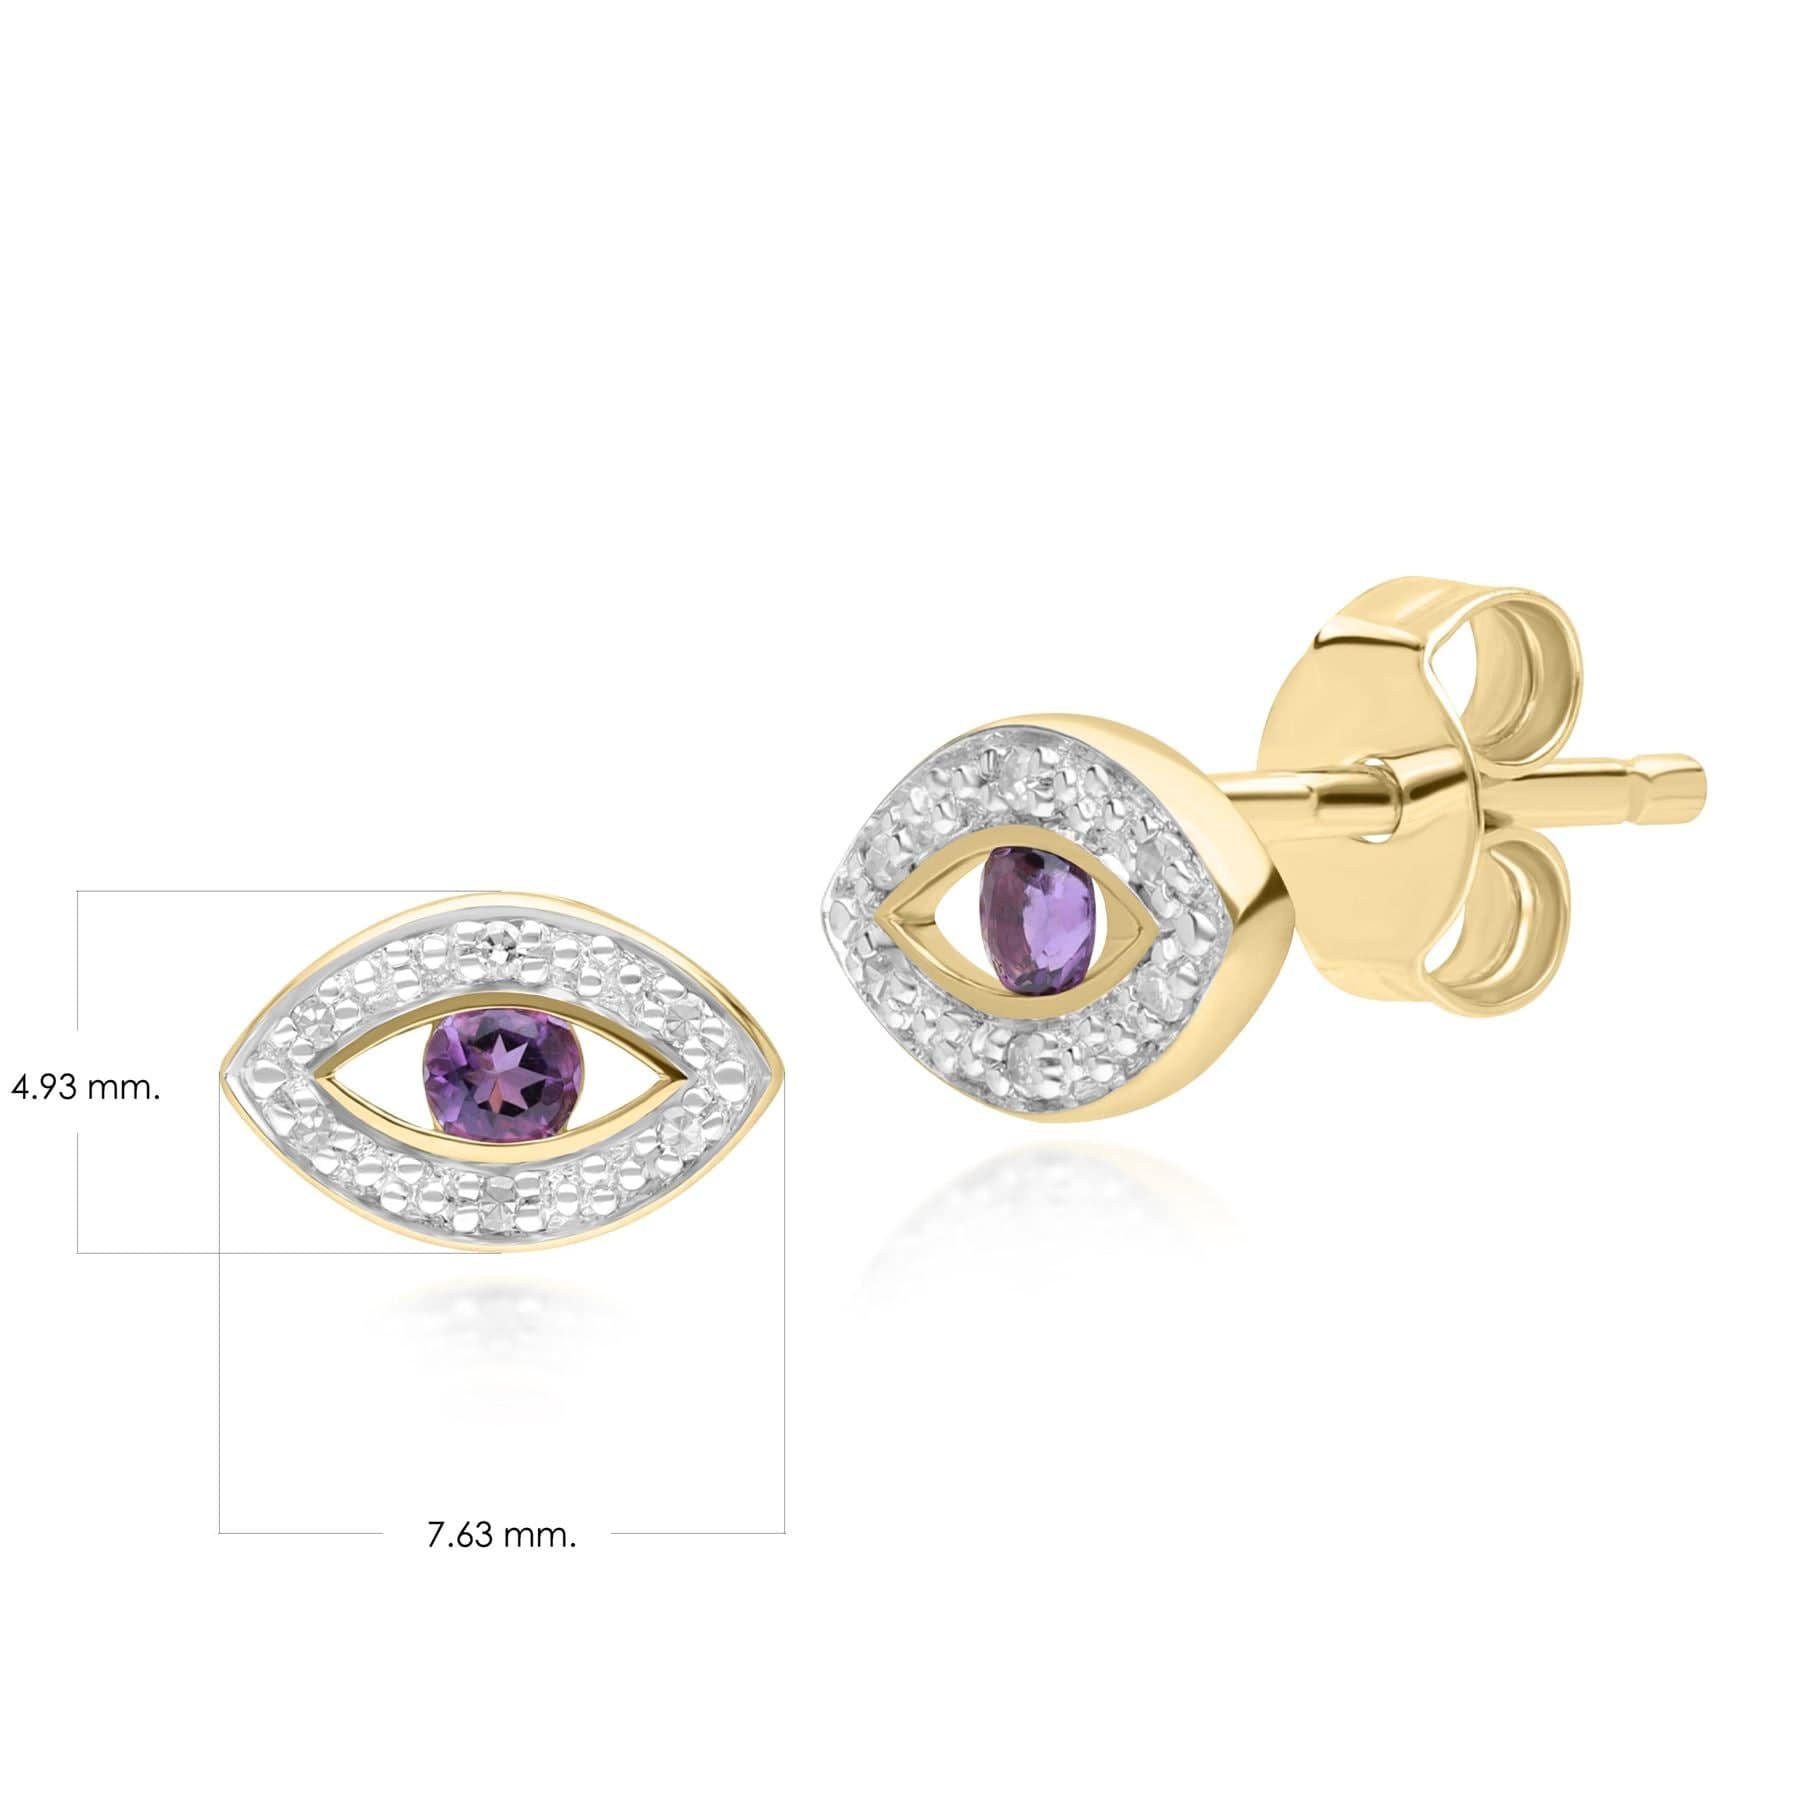 135E1824029 ECFEW™ Dainty Evil Eye Amethyst & Diamond Stud Earrings in 9ct Yellow Gold Dimensions